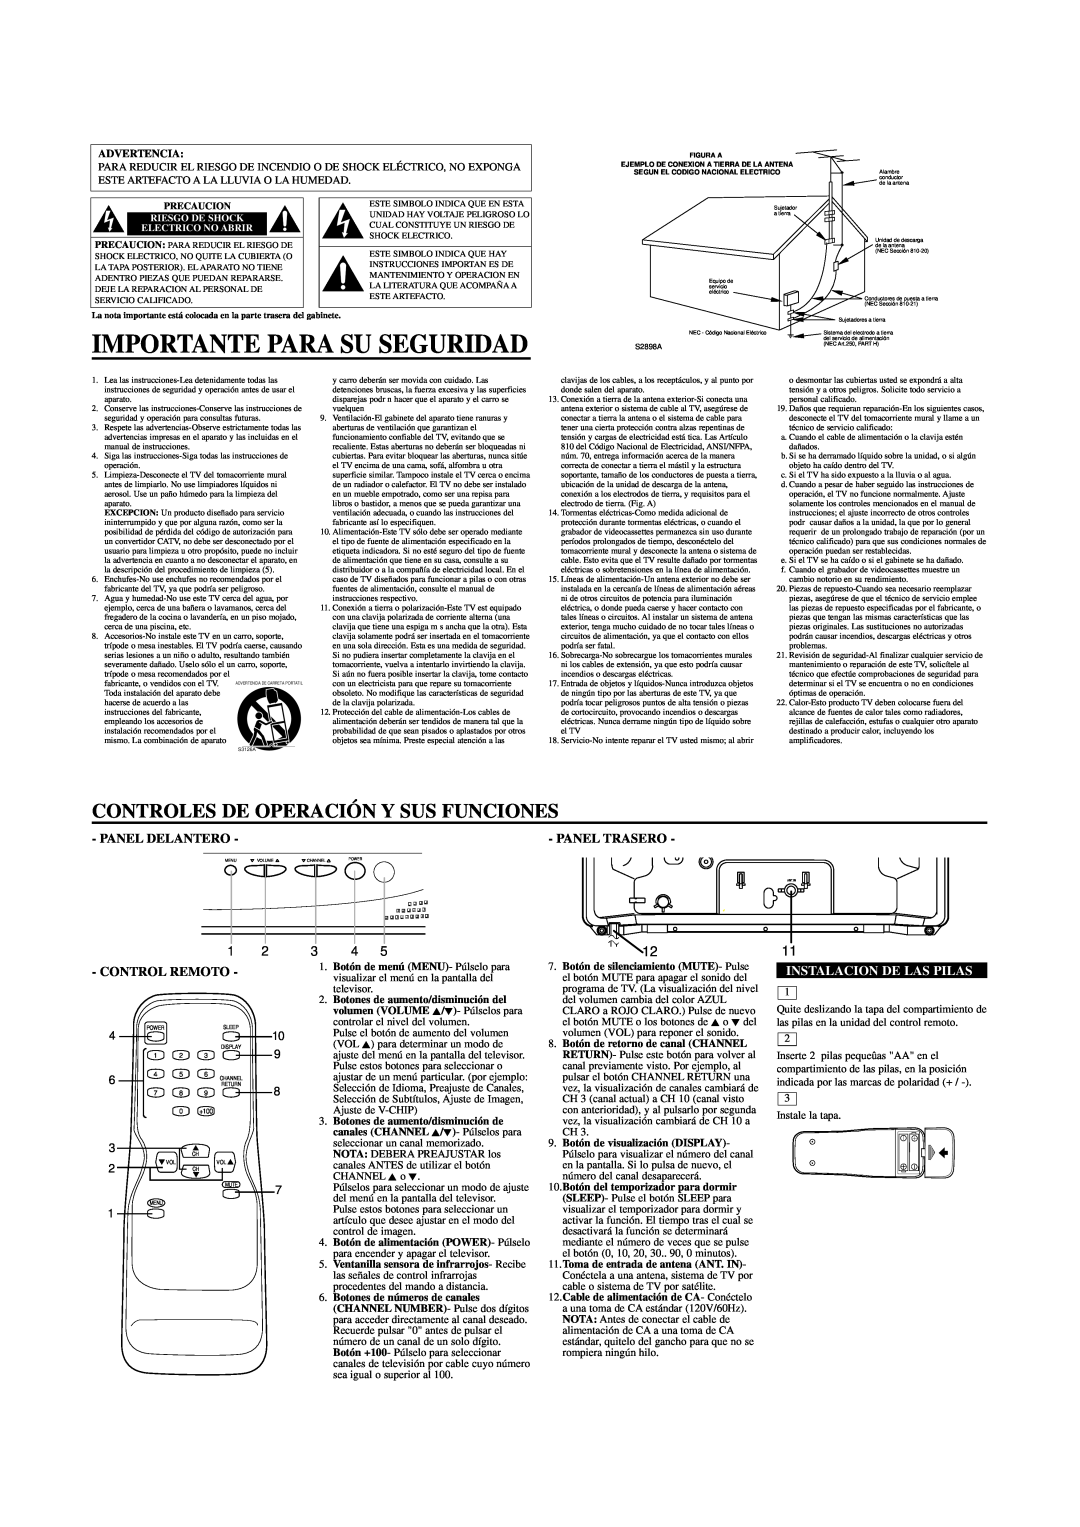 FUNAI WF-1901 owner manual Importante Para Su Seguridad, Panel Trasero, Instalacion De Las Pilas, Advertencia 